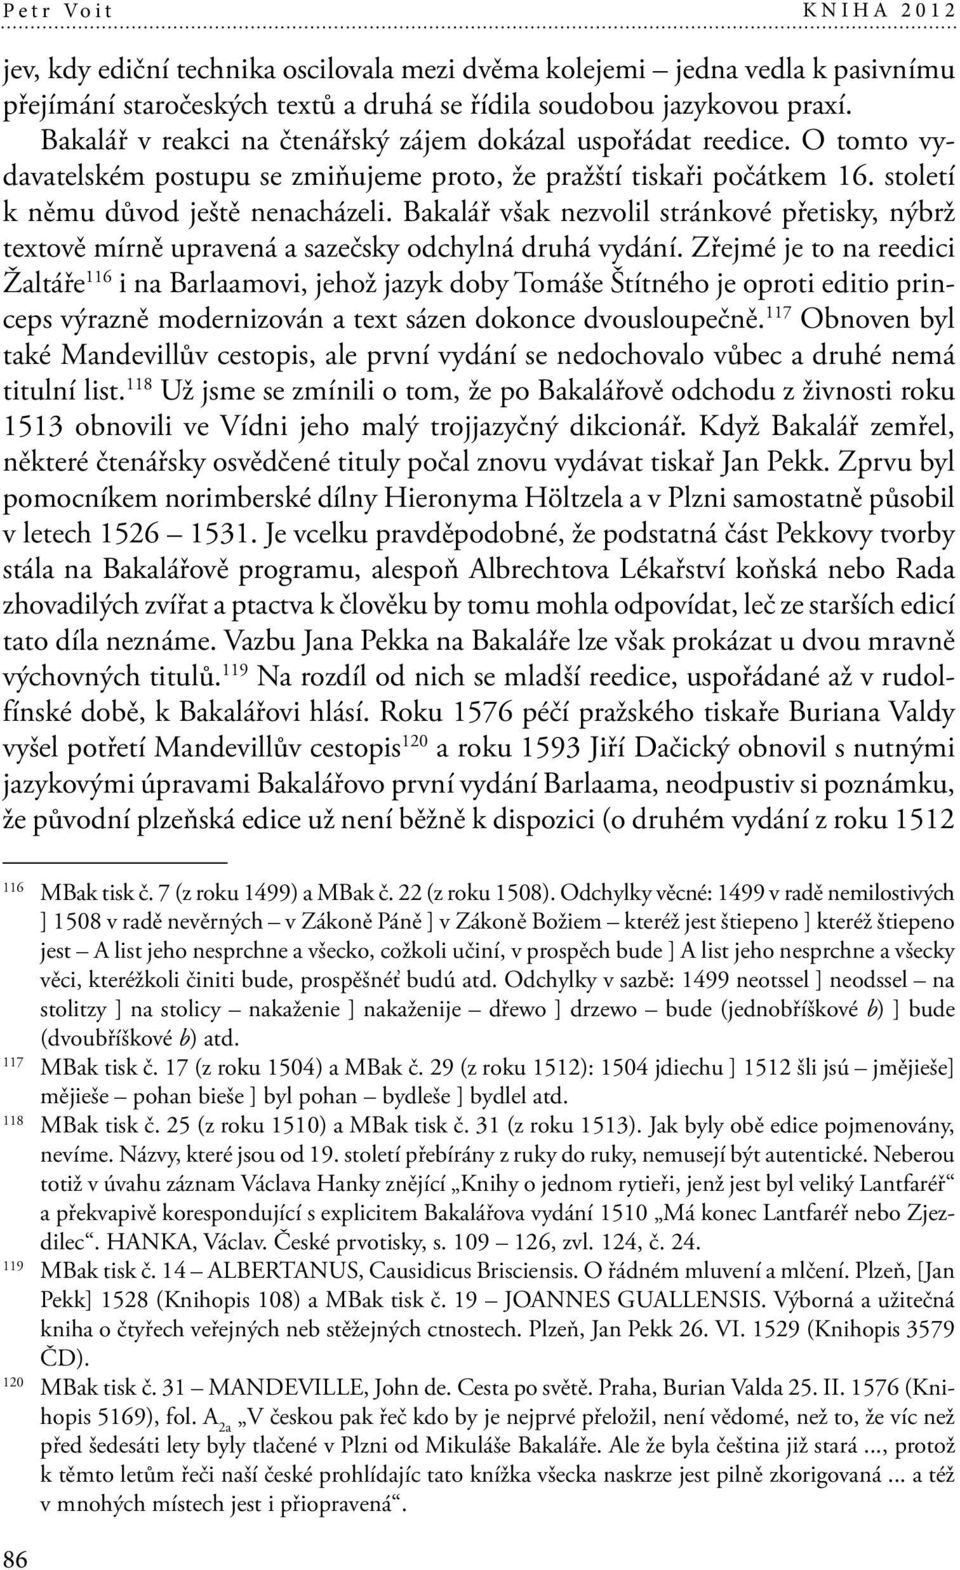 Bakalář však nezvolil stránkové přetisky, nýbrž textově mírně upravená a sazečsky odchylná druhá vydání.